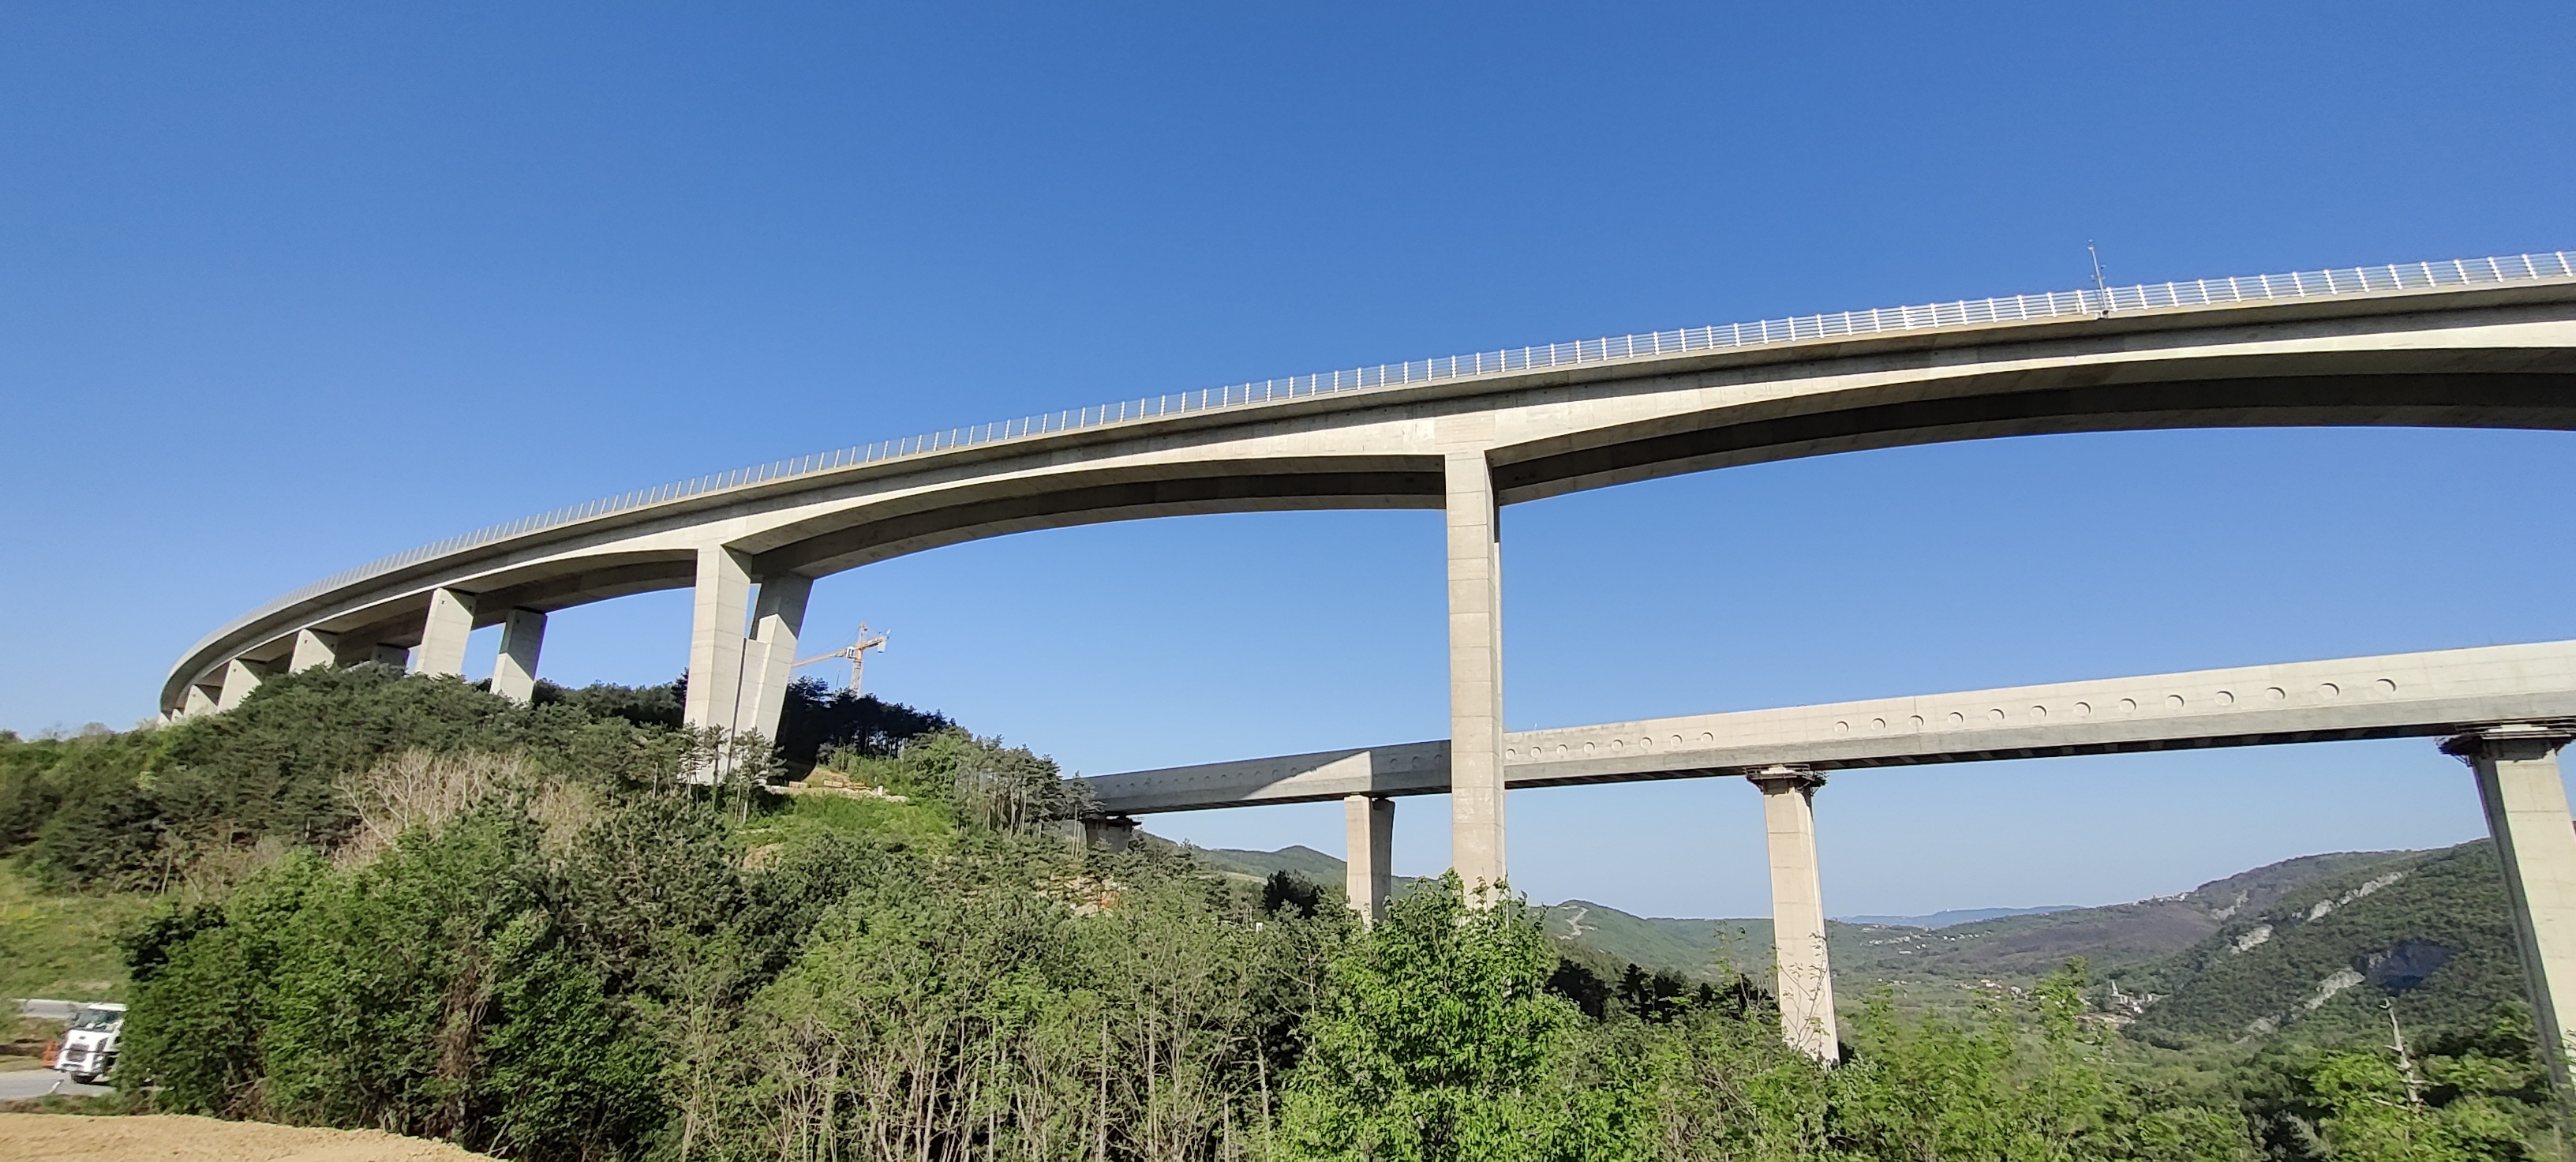 Projekt Vstopna točka Kraški rob (Foto: viadukt nad vstopno točko)